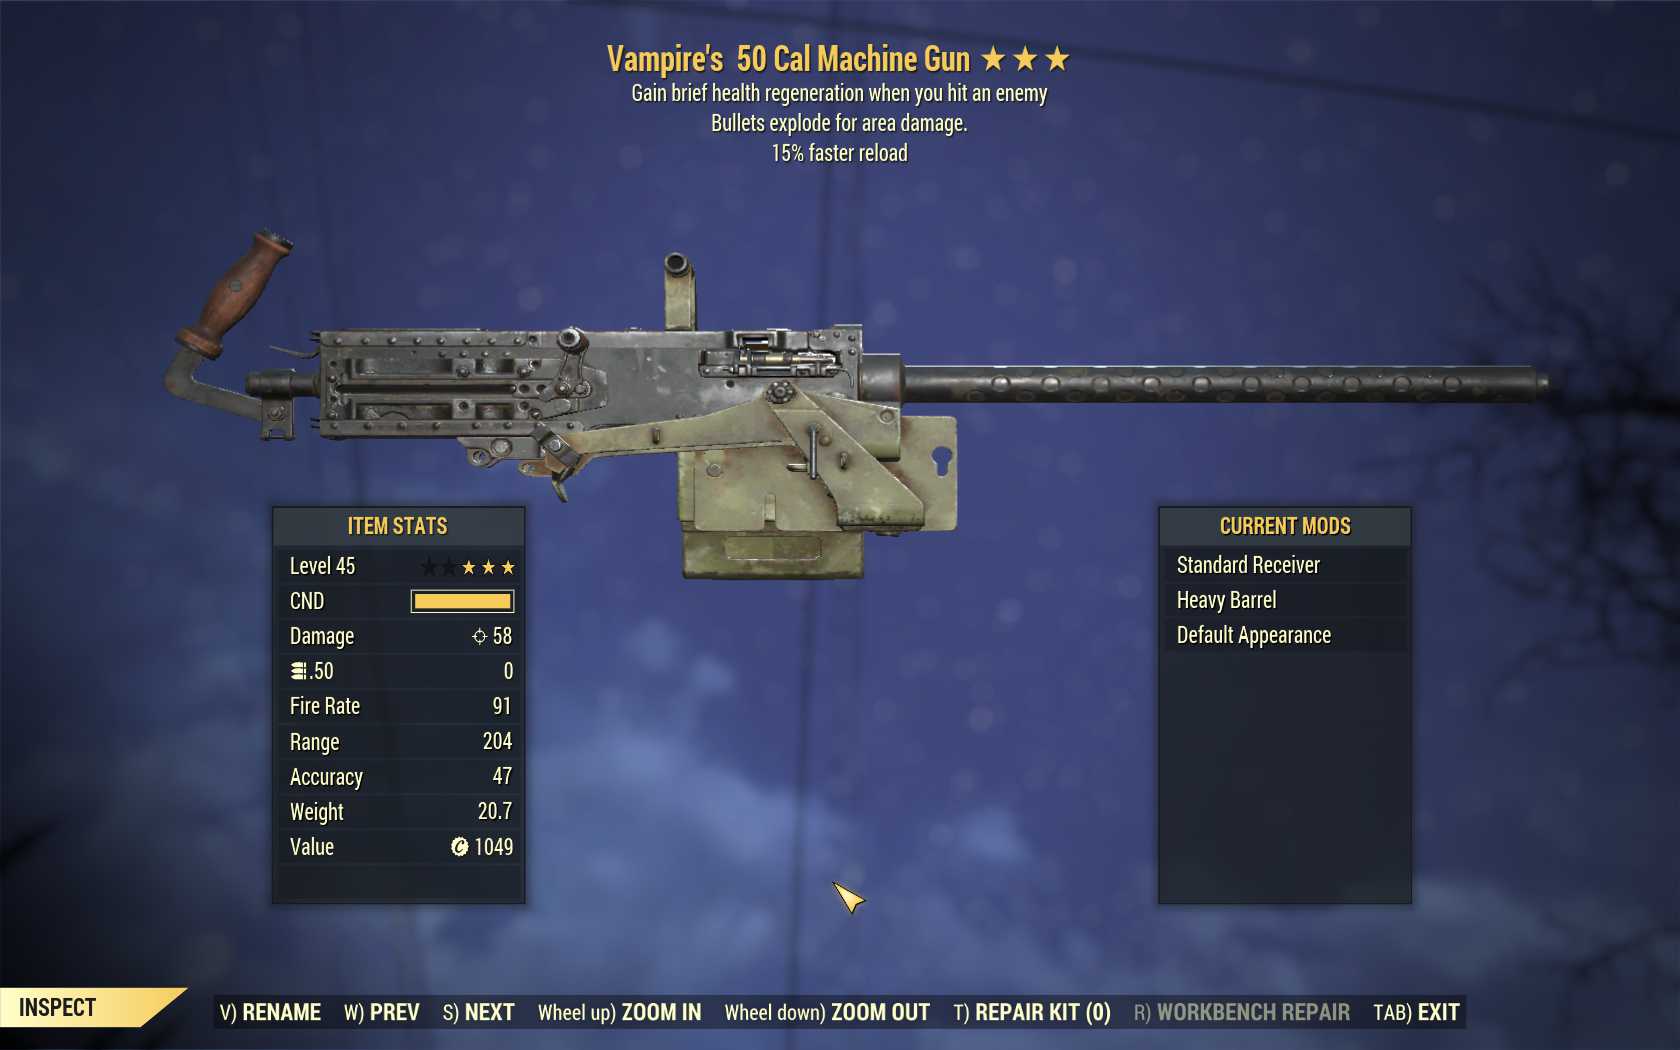 Vampire's Explosive 50 Cal Machine Gun (15% faster reload)